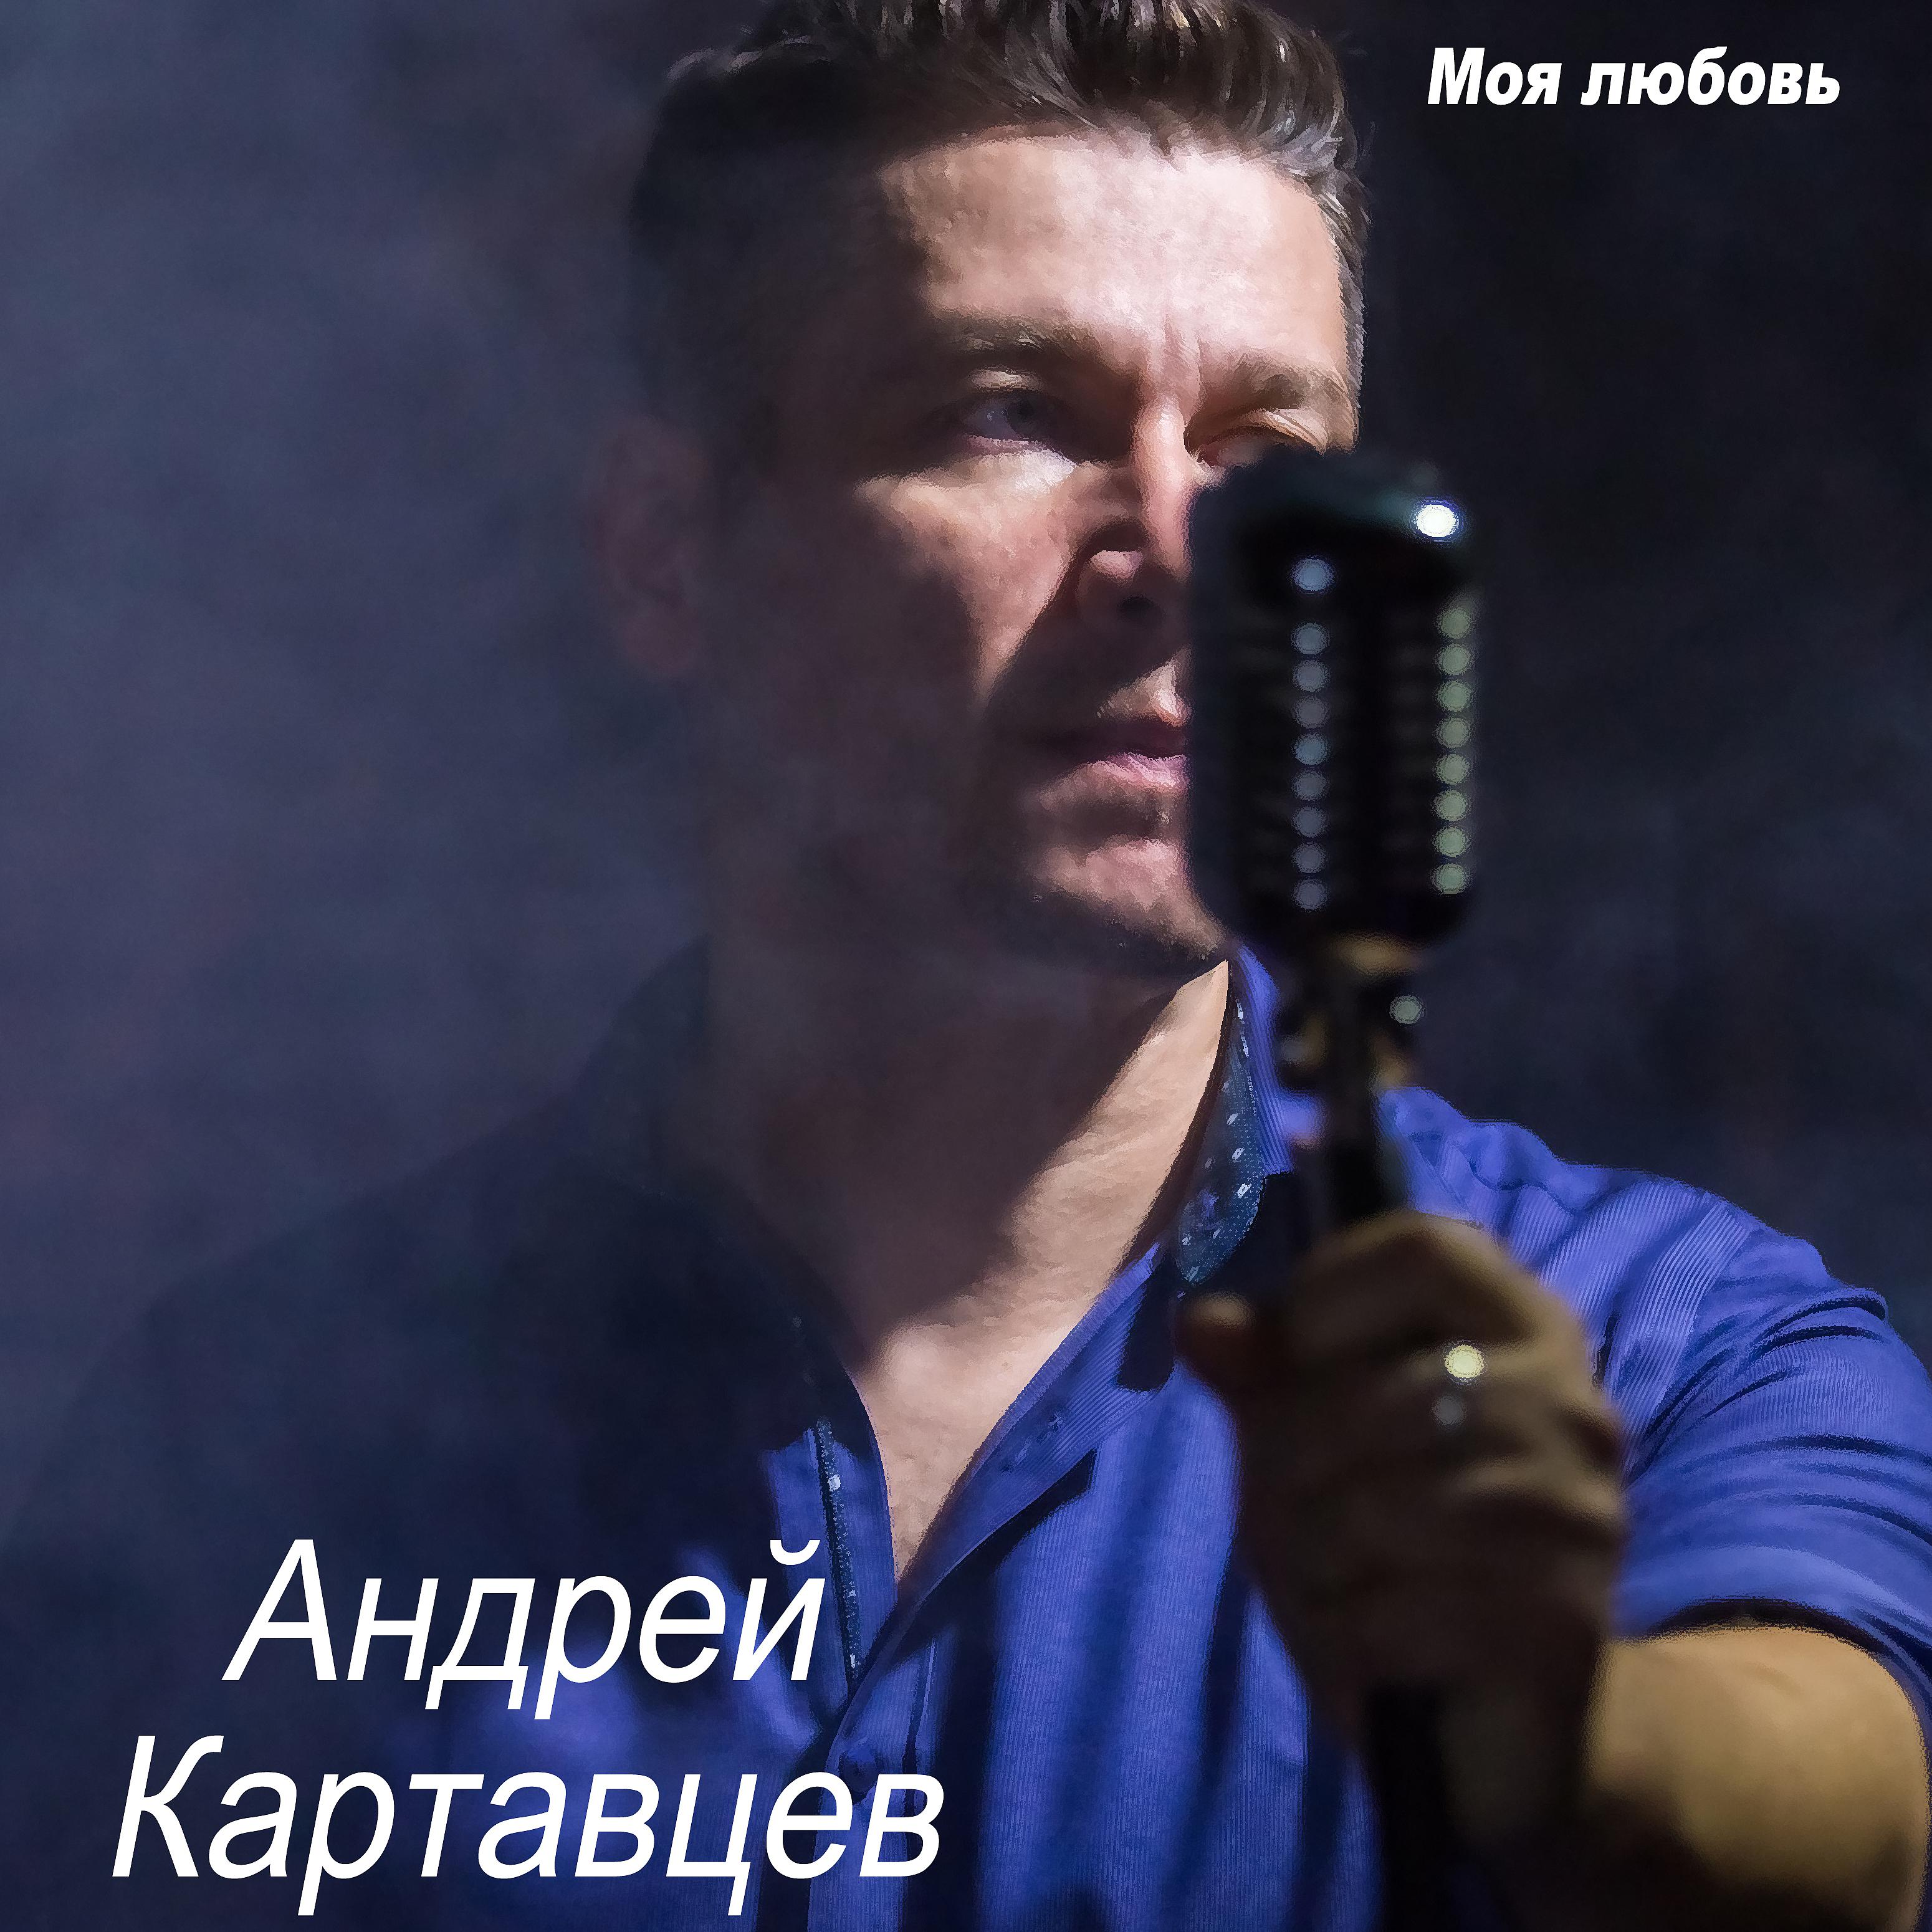 Andrey песни. Фото Андрея Картавцева.